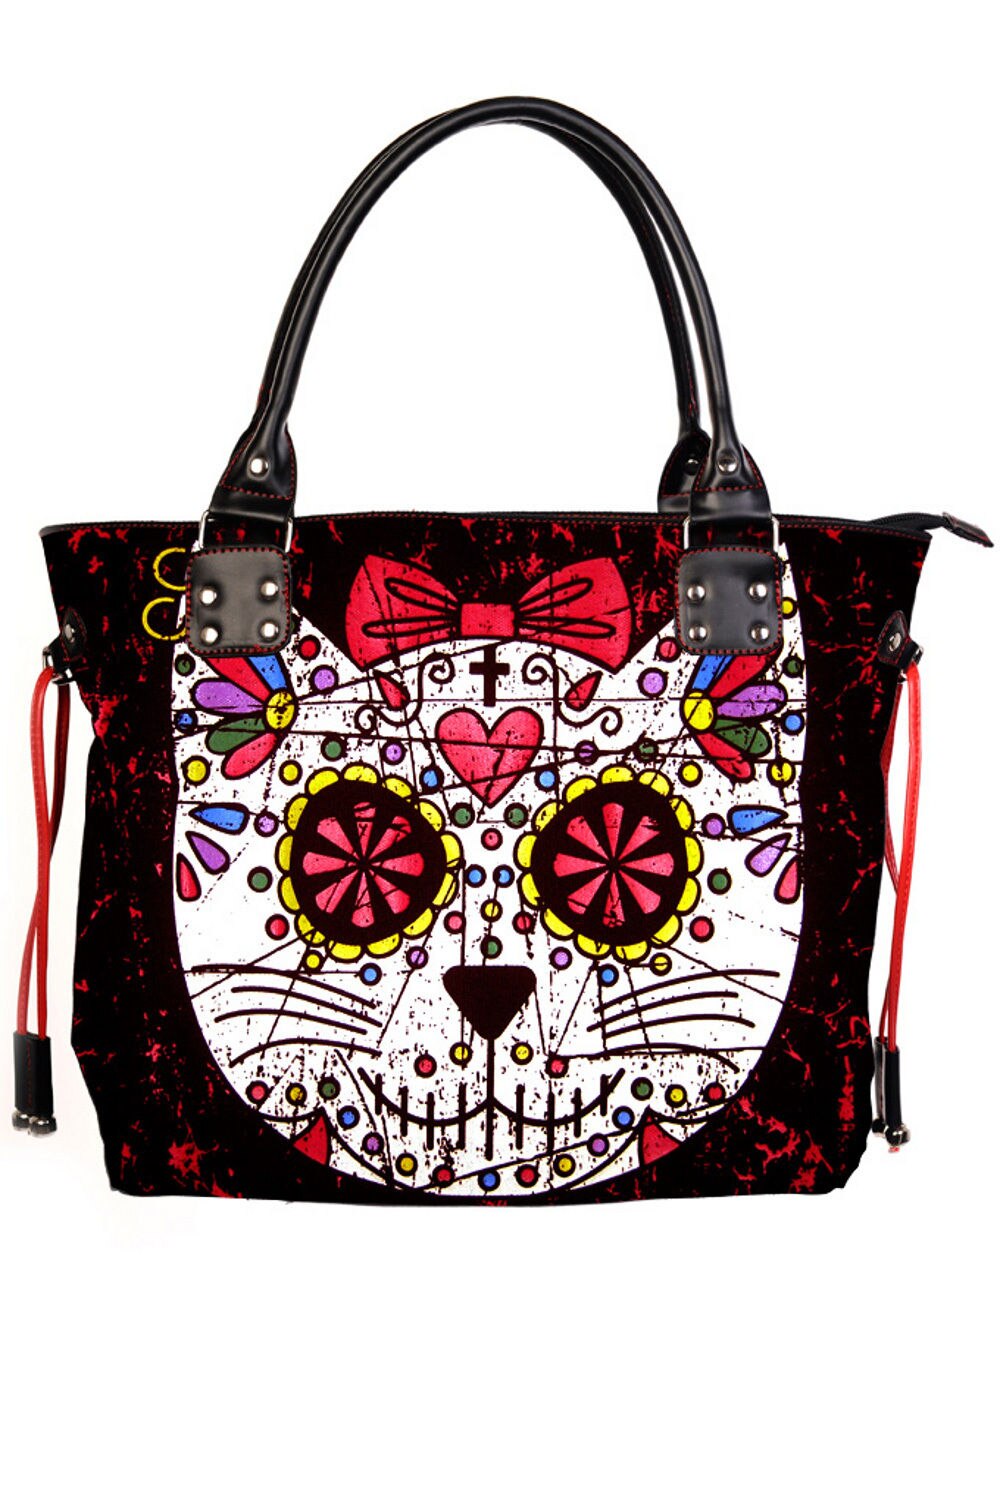 Lady Girl Sugar Skull Cat Candy Handbag School Shoulder Bag Gothic Punk Rockabilly